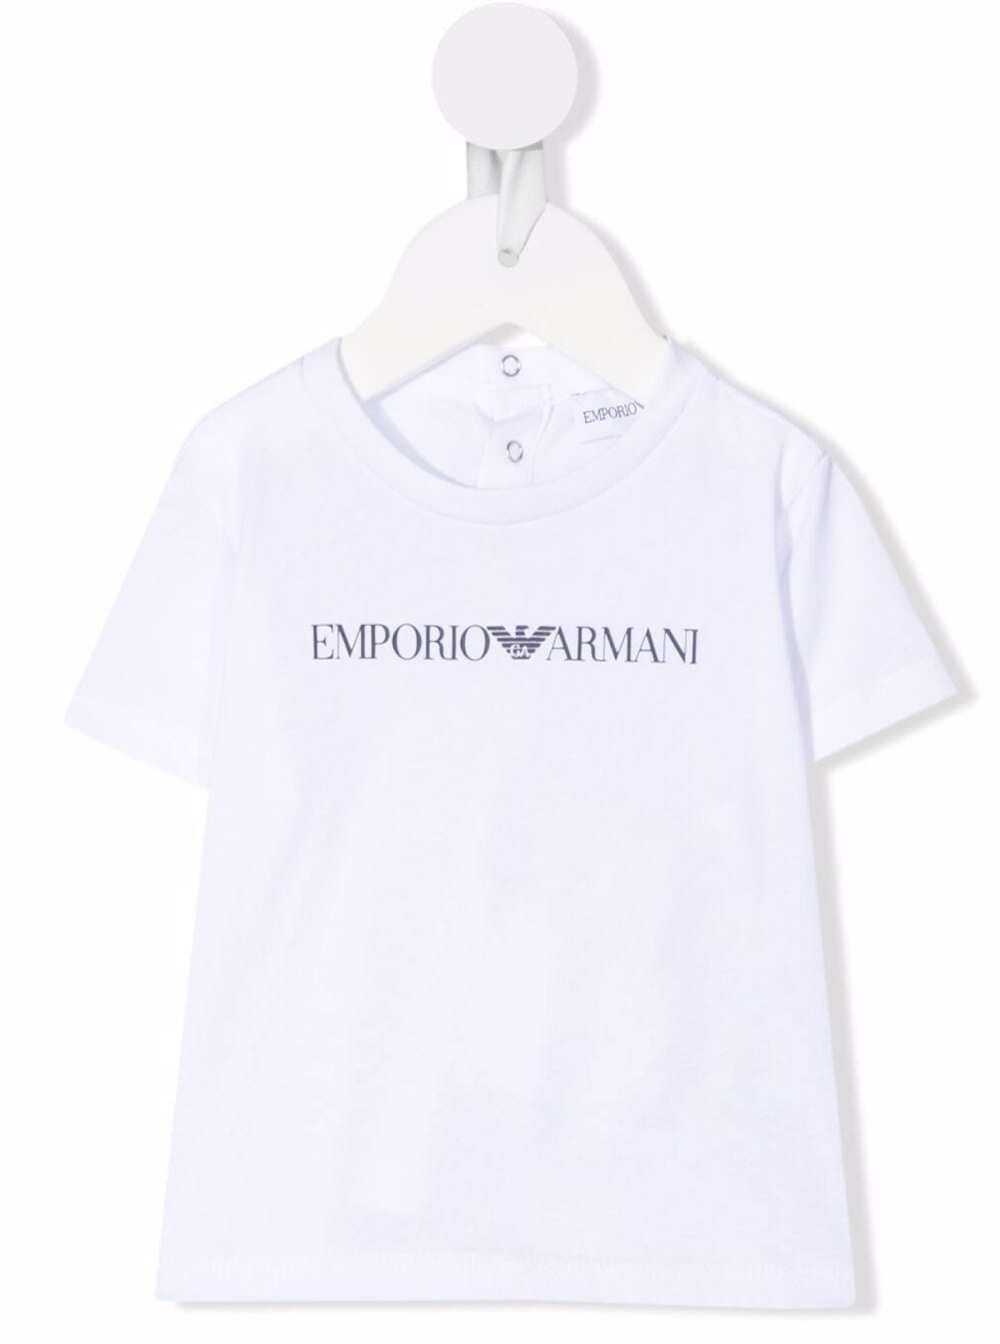 Emporio Armani Kids Baby Boys White Cotton T-shirt With Logo Print